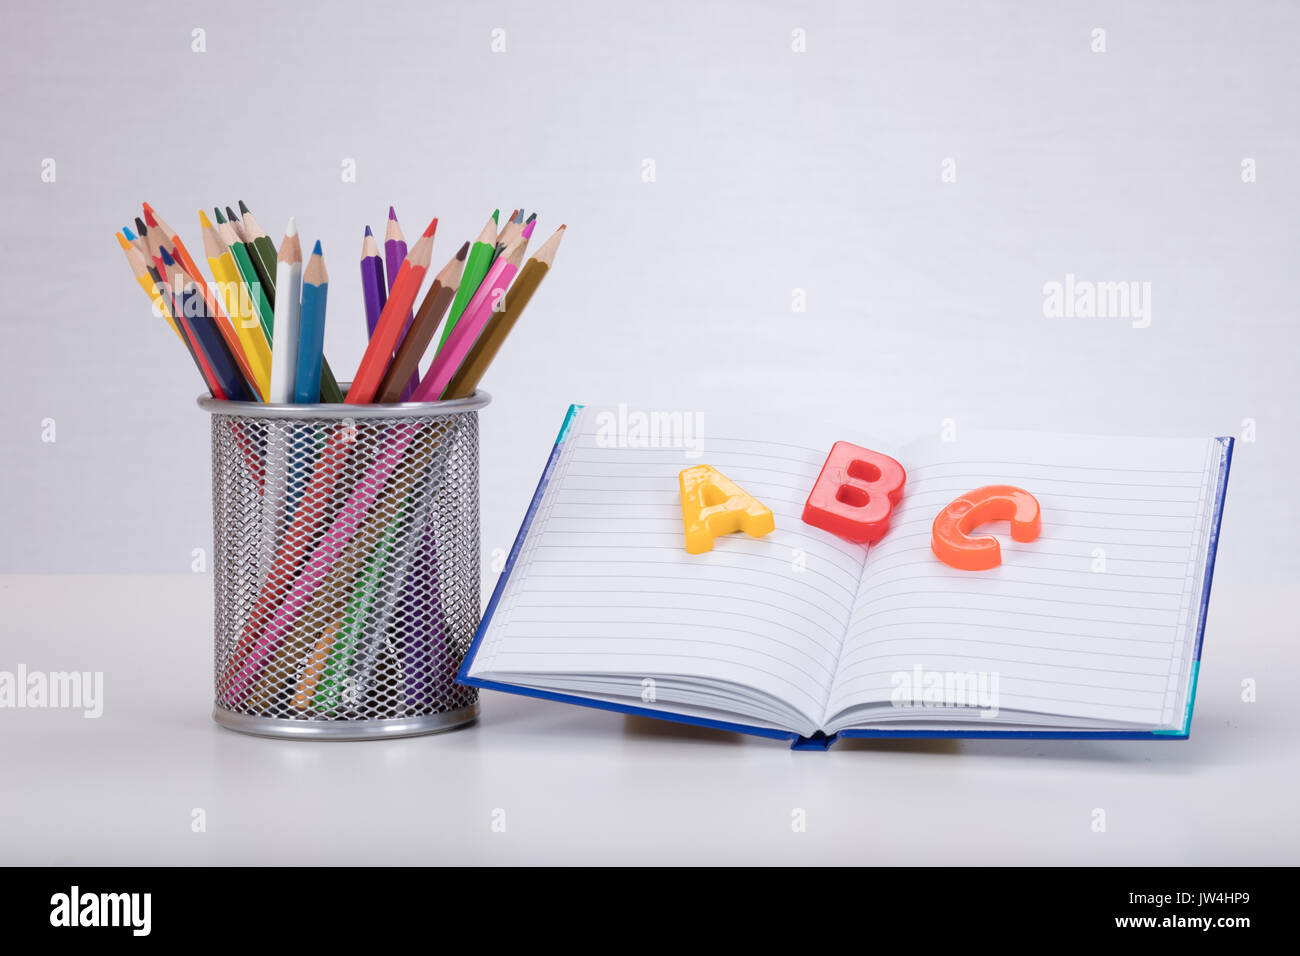 Un concepto de aprendizaje escolar con color lápices para dibujar un libro abierto y el aprendizaje de las letras del alfabeto ABC sobre un fondo completamente blanco con espacio de copia. Foto de stock